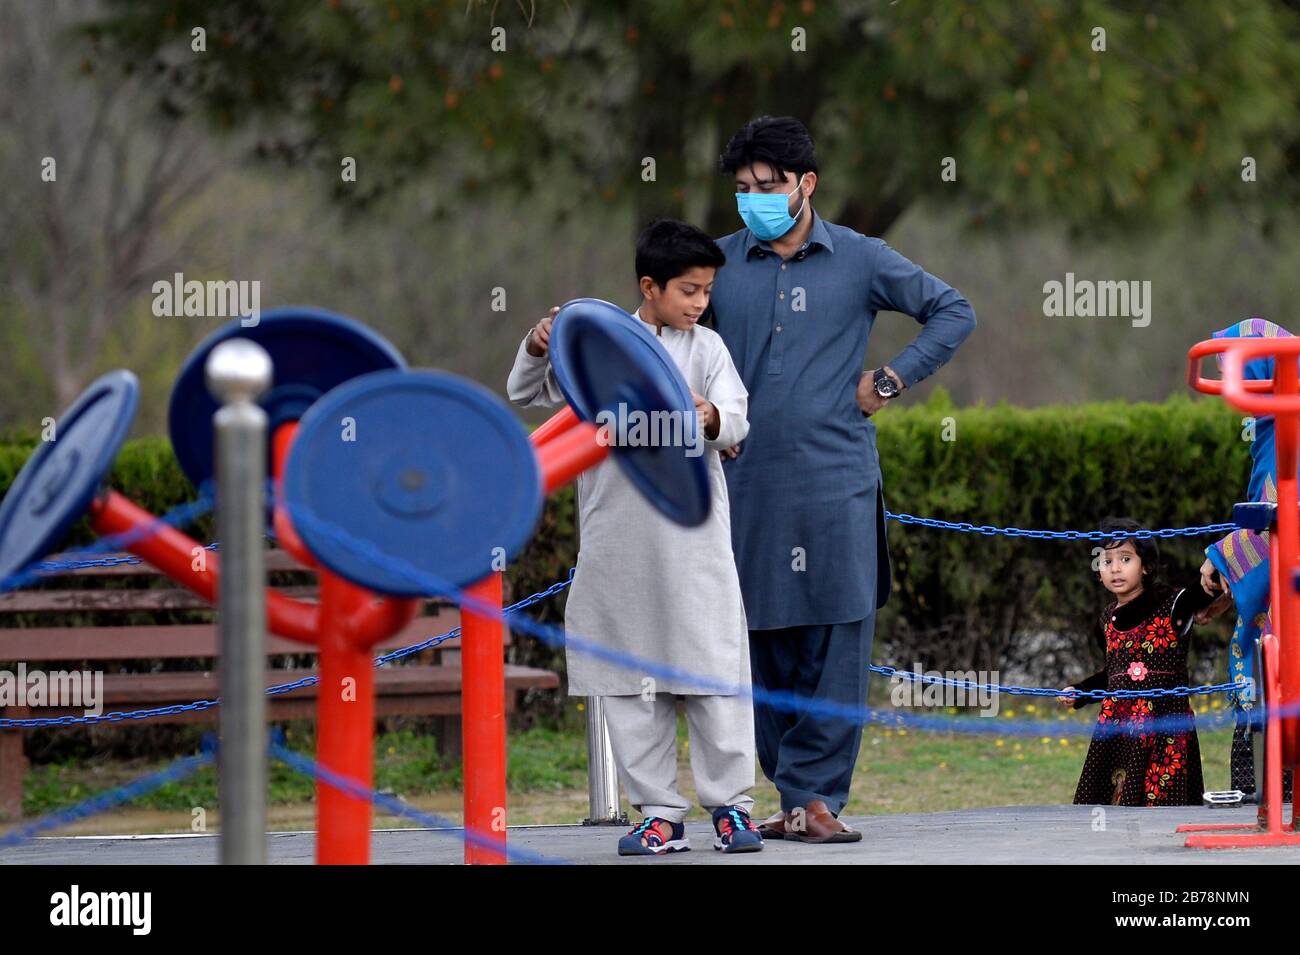 (200314) -- ISLAMABAD, le 14 mars 2020 (Xinhua) -- un homme portant un masque facial est vu dans un parc public à Islamabad, capitale du Pakistan, le 14 mars 2020. Le gouvernement du Pakistan a annoncé de mettre à niveau ses mesures contre COVID-19 dans tout le pays après que 28 personnes ont testé le virus positif au cours des 17 derniers jours, a déclaré l'adjoint spécial au Premier ministre de la Santé Zafar Mirza aux médias ici vendredi soir. Le pays a interdit toutes sortes de rassemblements publics, y compris les festivals sportifs et culturels, les rassemblements récréatifs dans les cinémas et les théâtres, les cérémonies de mariage dans les salles ou les salles ouvertes Banque D'Images